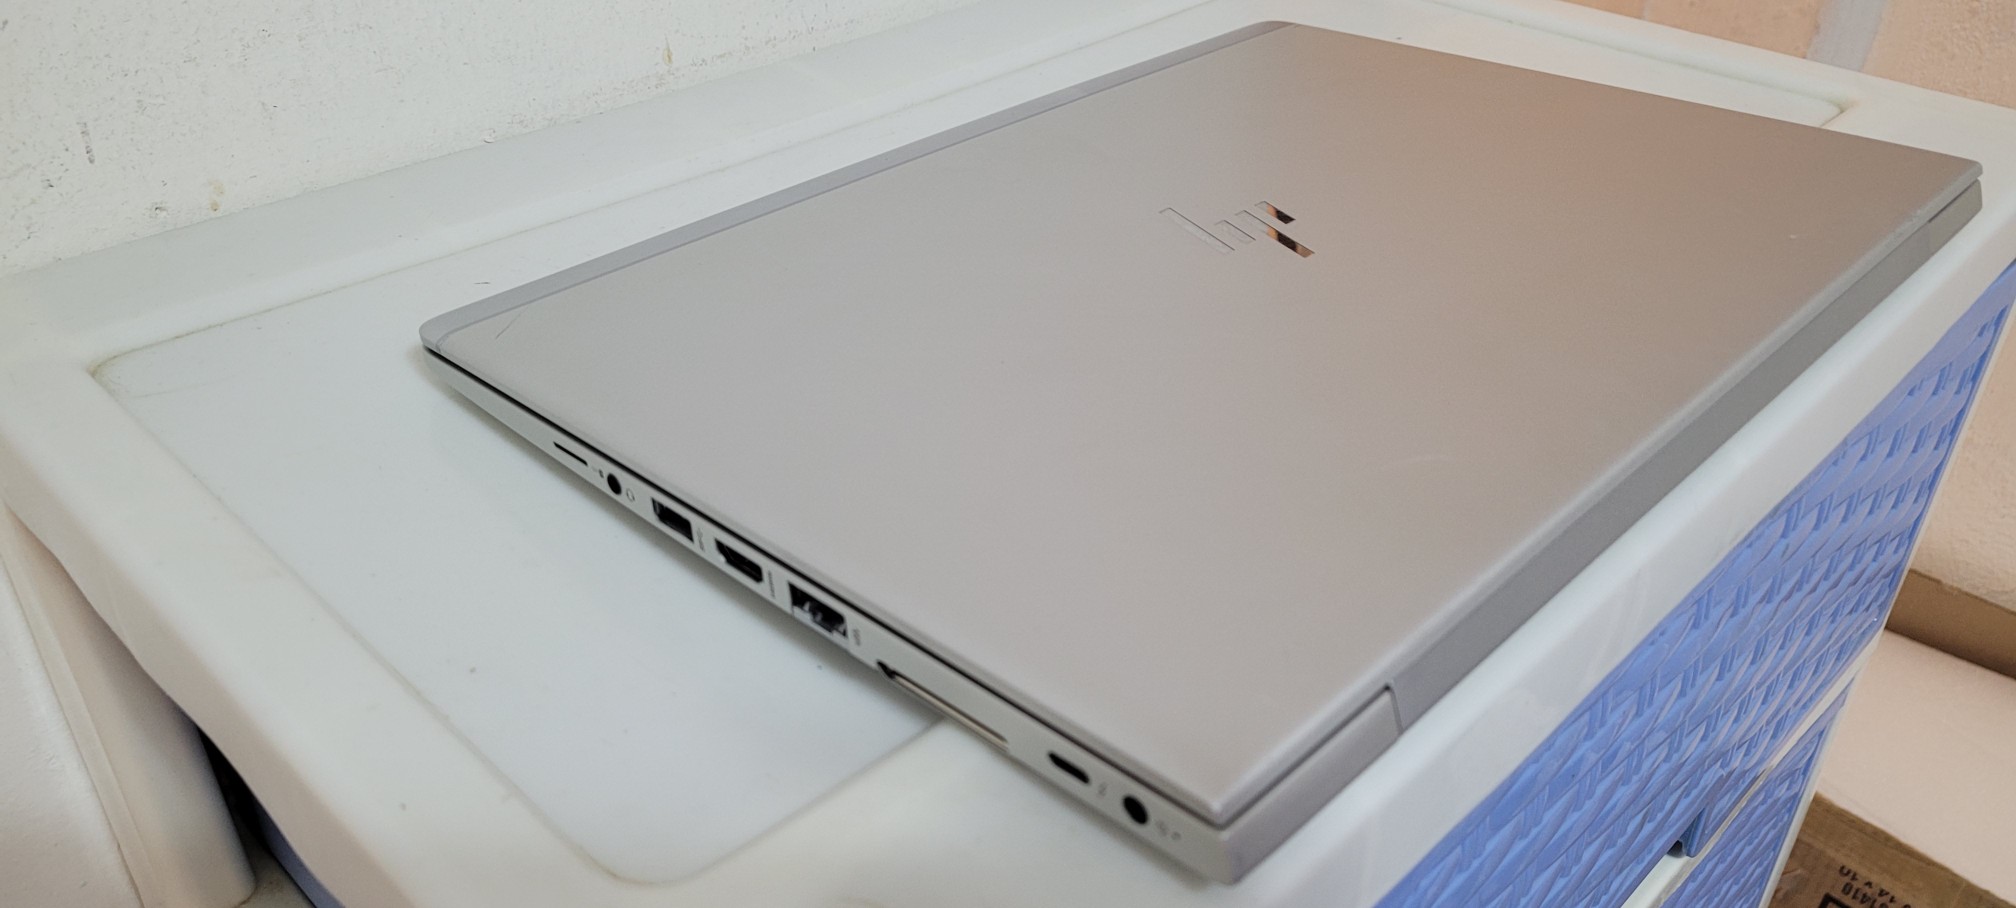 computadoras y laptops - Laptop Slim hp G3 14 Pulg Core i5 7ma Gen Ram 8gb ddr4 Disco 256gb SSD Solido HD 2